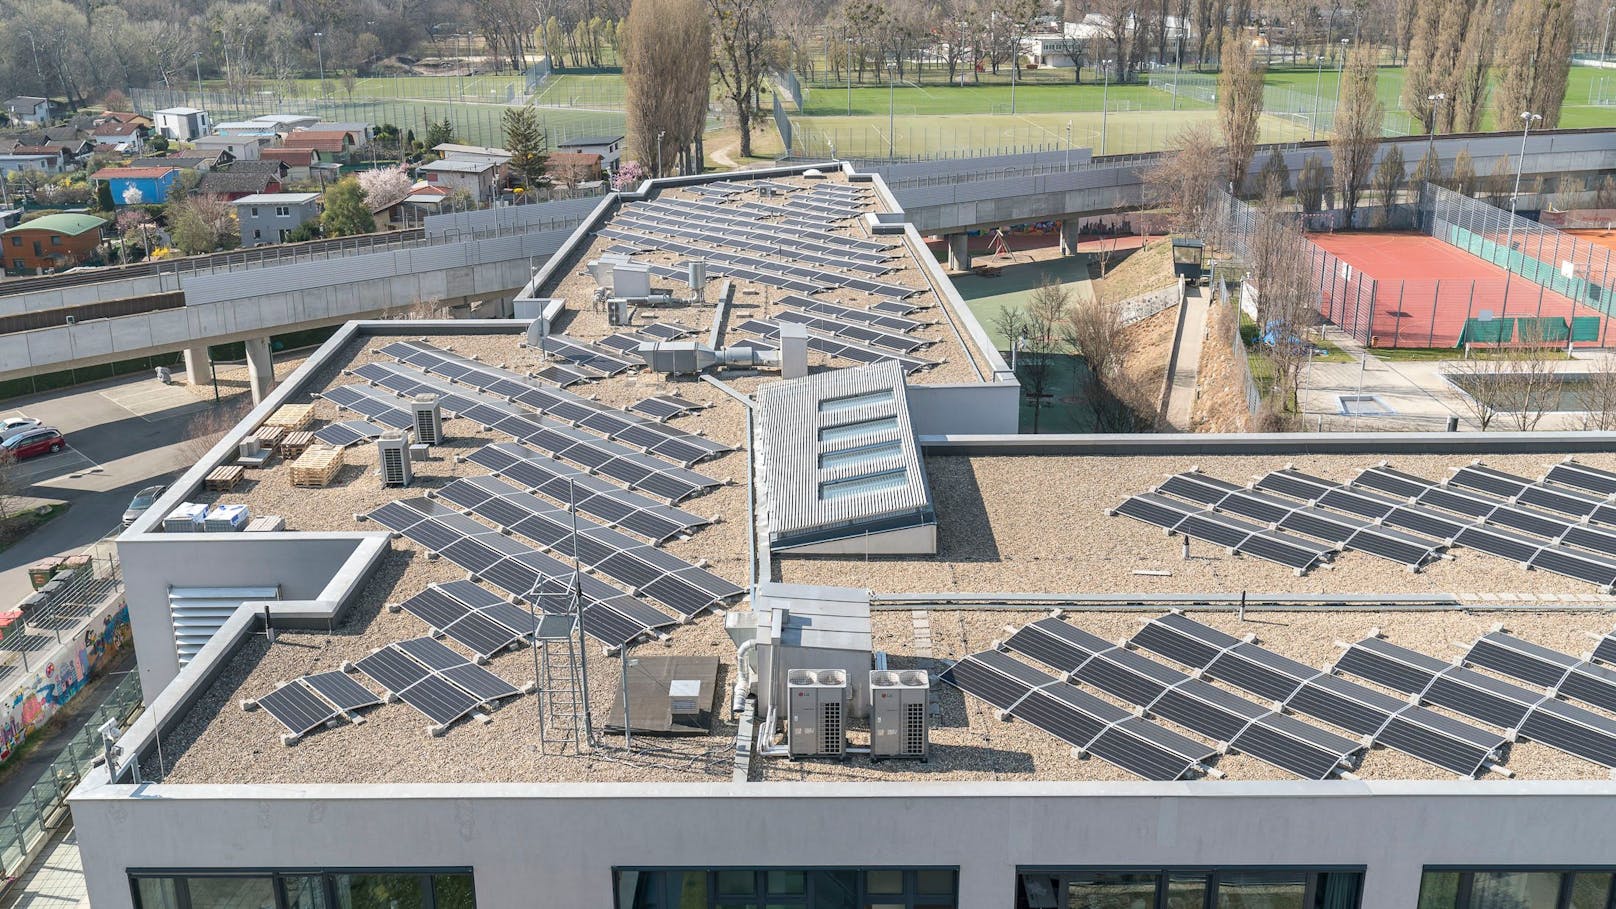 692 Solarmodule produzieren nun auf den Dächern des IKG-Campus Sonnenstrom.